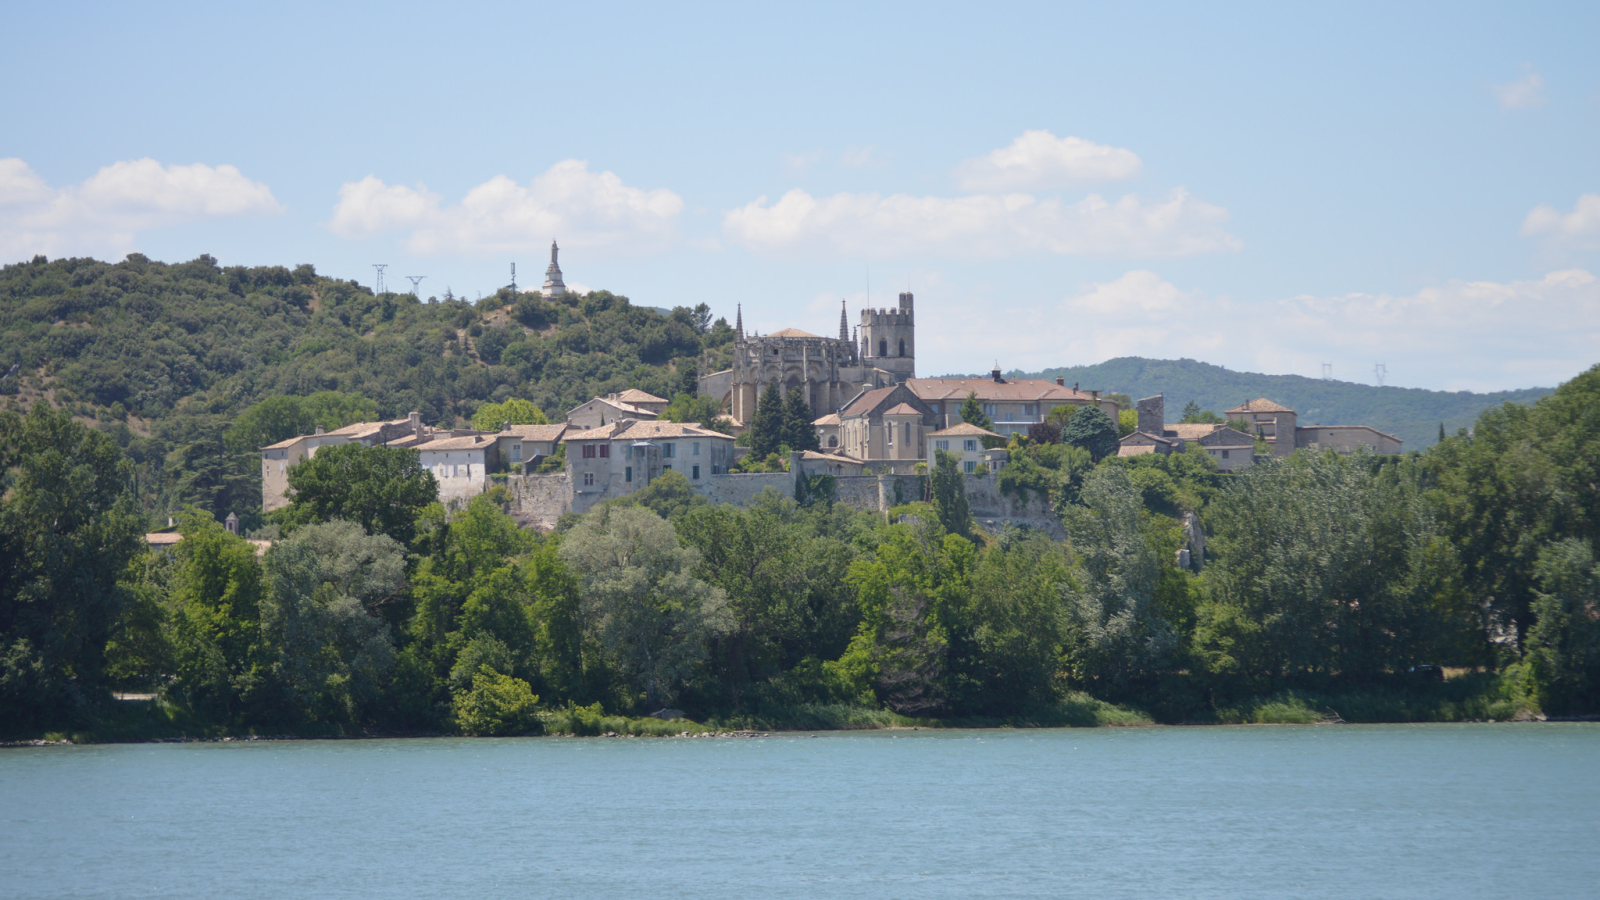 Ville épiscopale, bordée par le Rhône